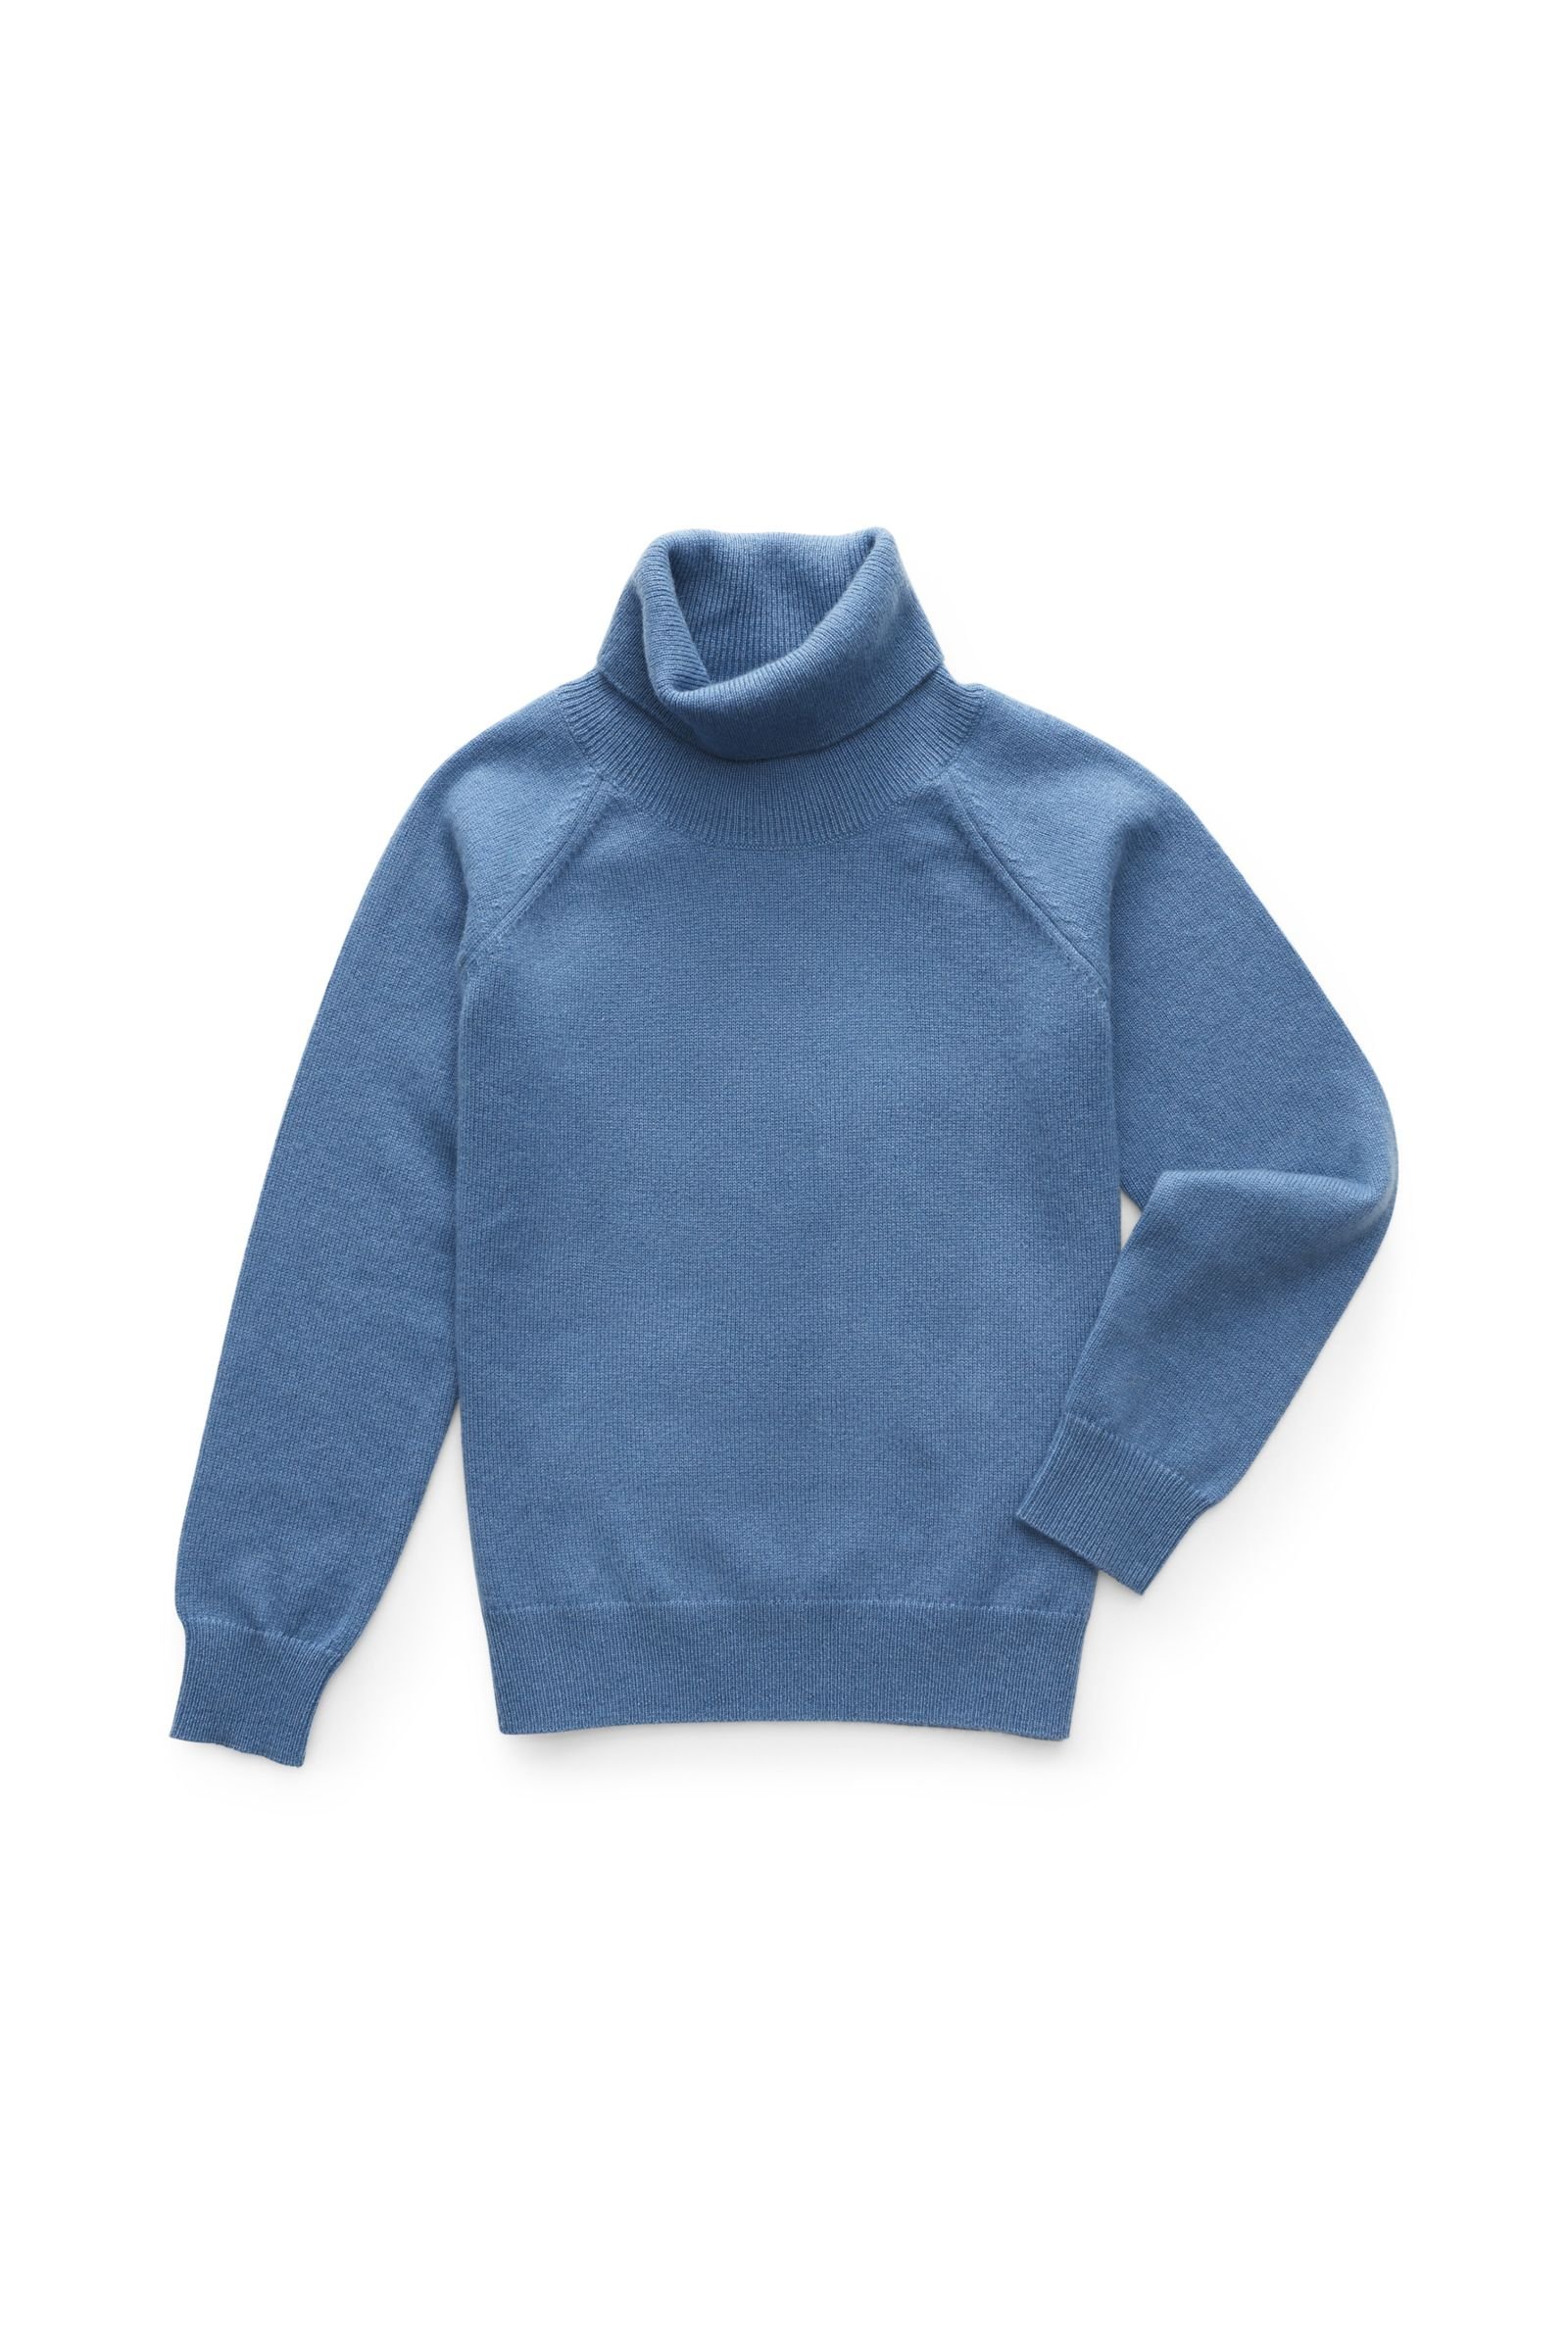 Kids’ cashmere turtleneck jumper smoky blue